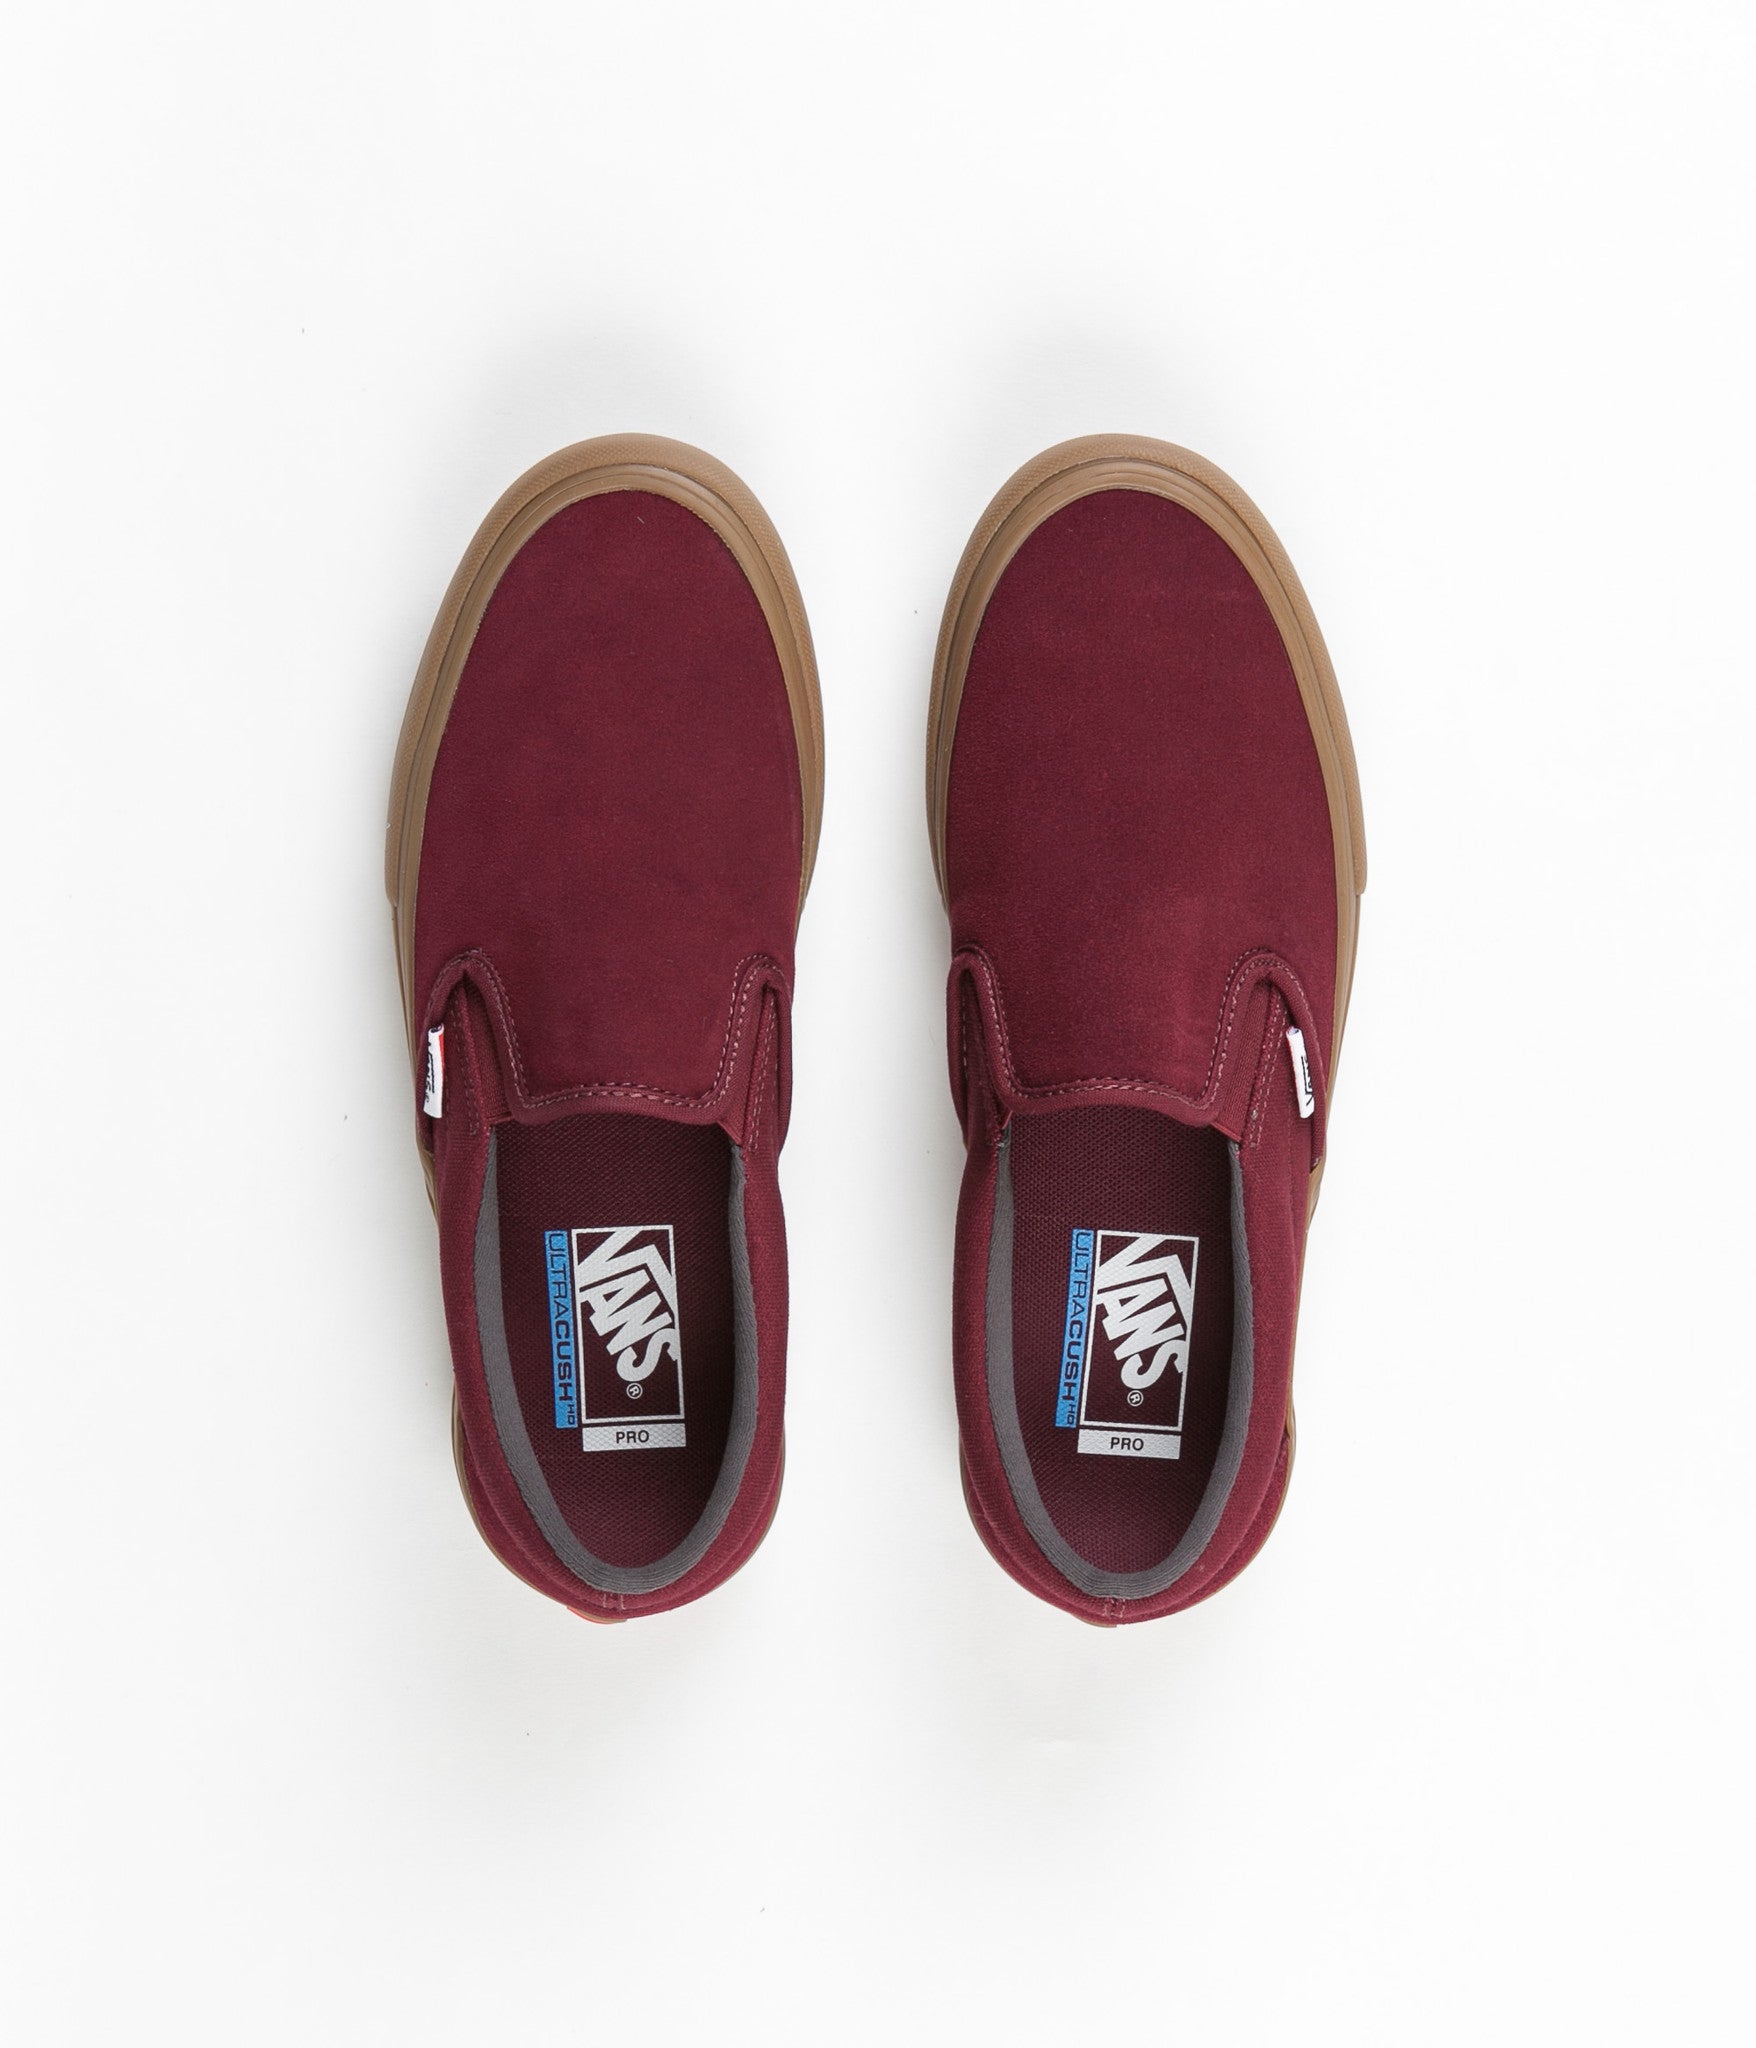 Vans Slip-On Pro Shoes - Port Royal 